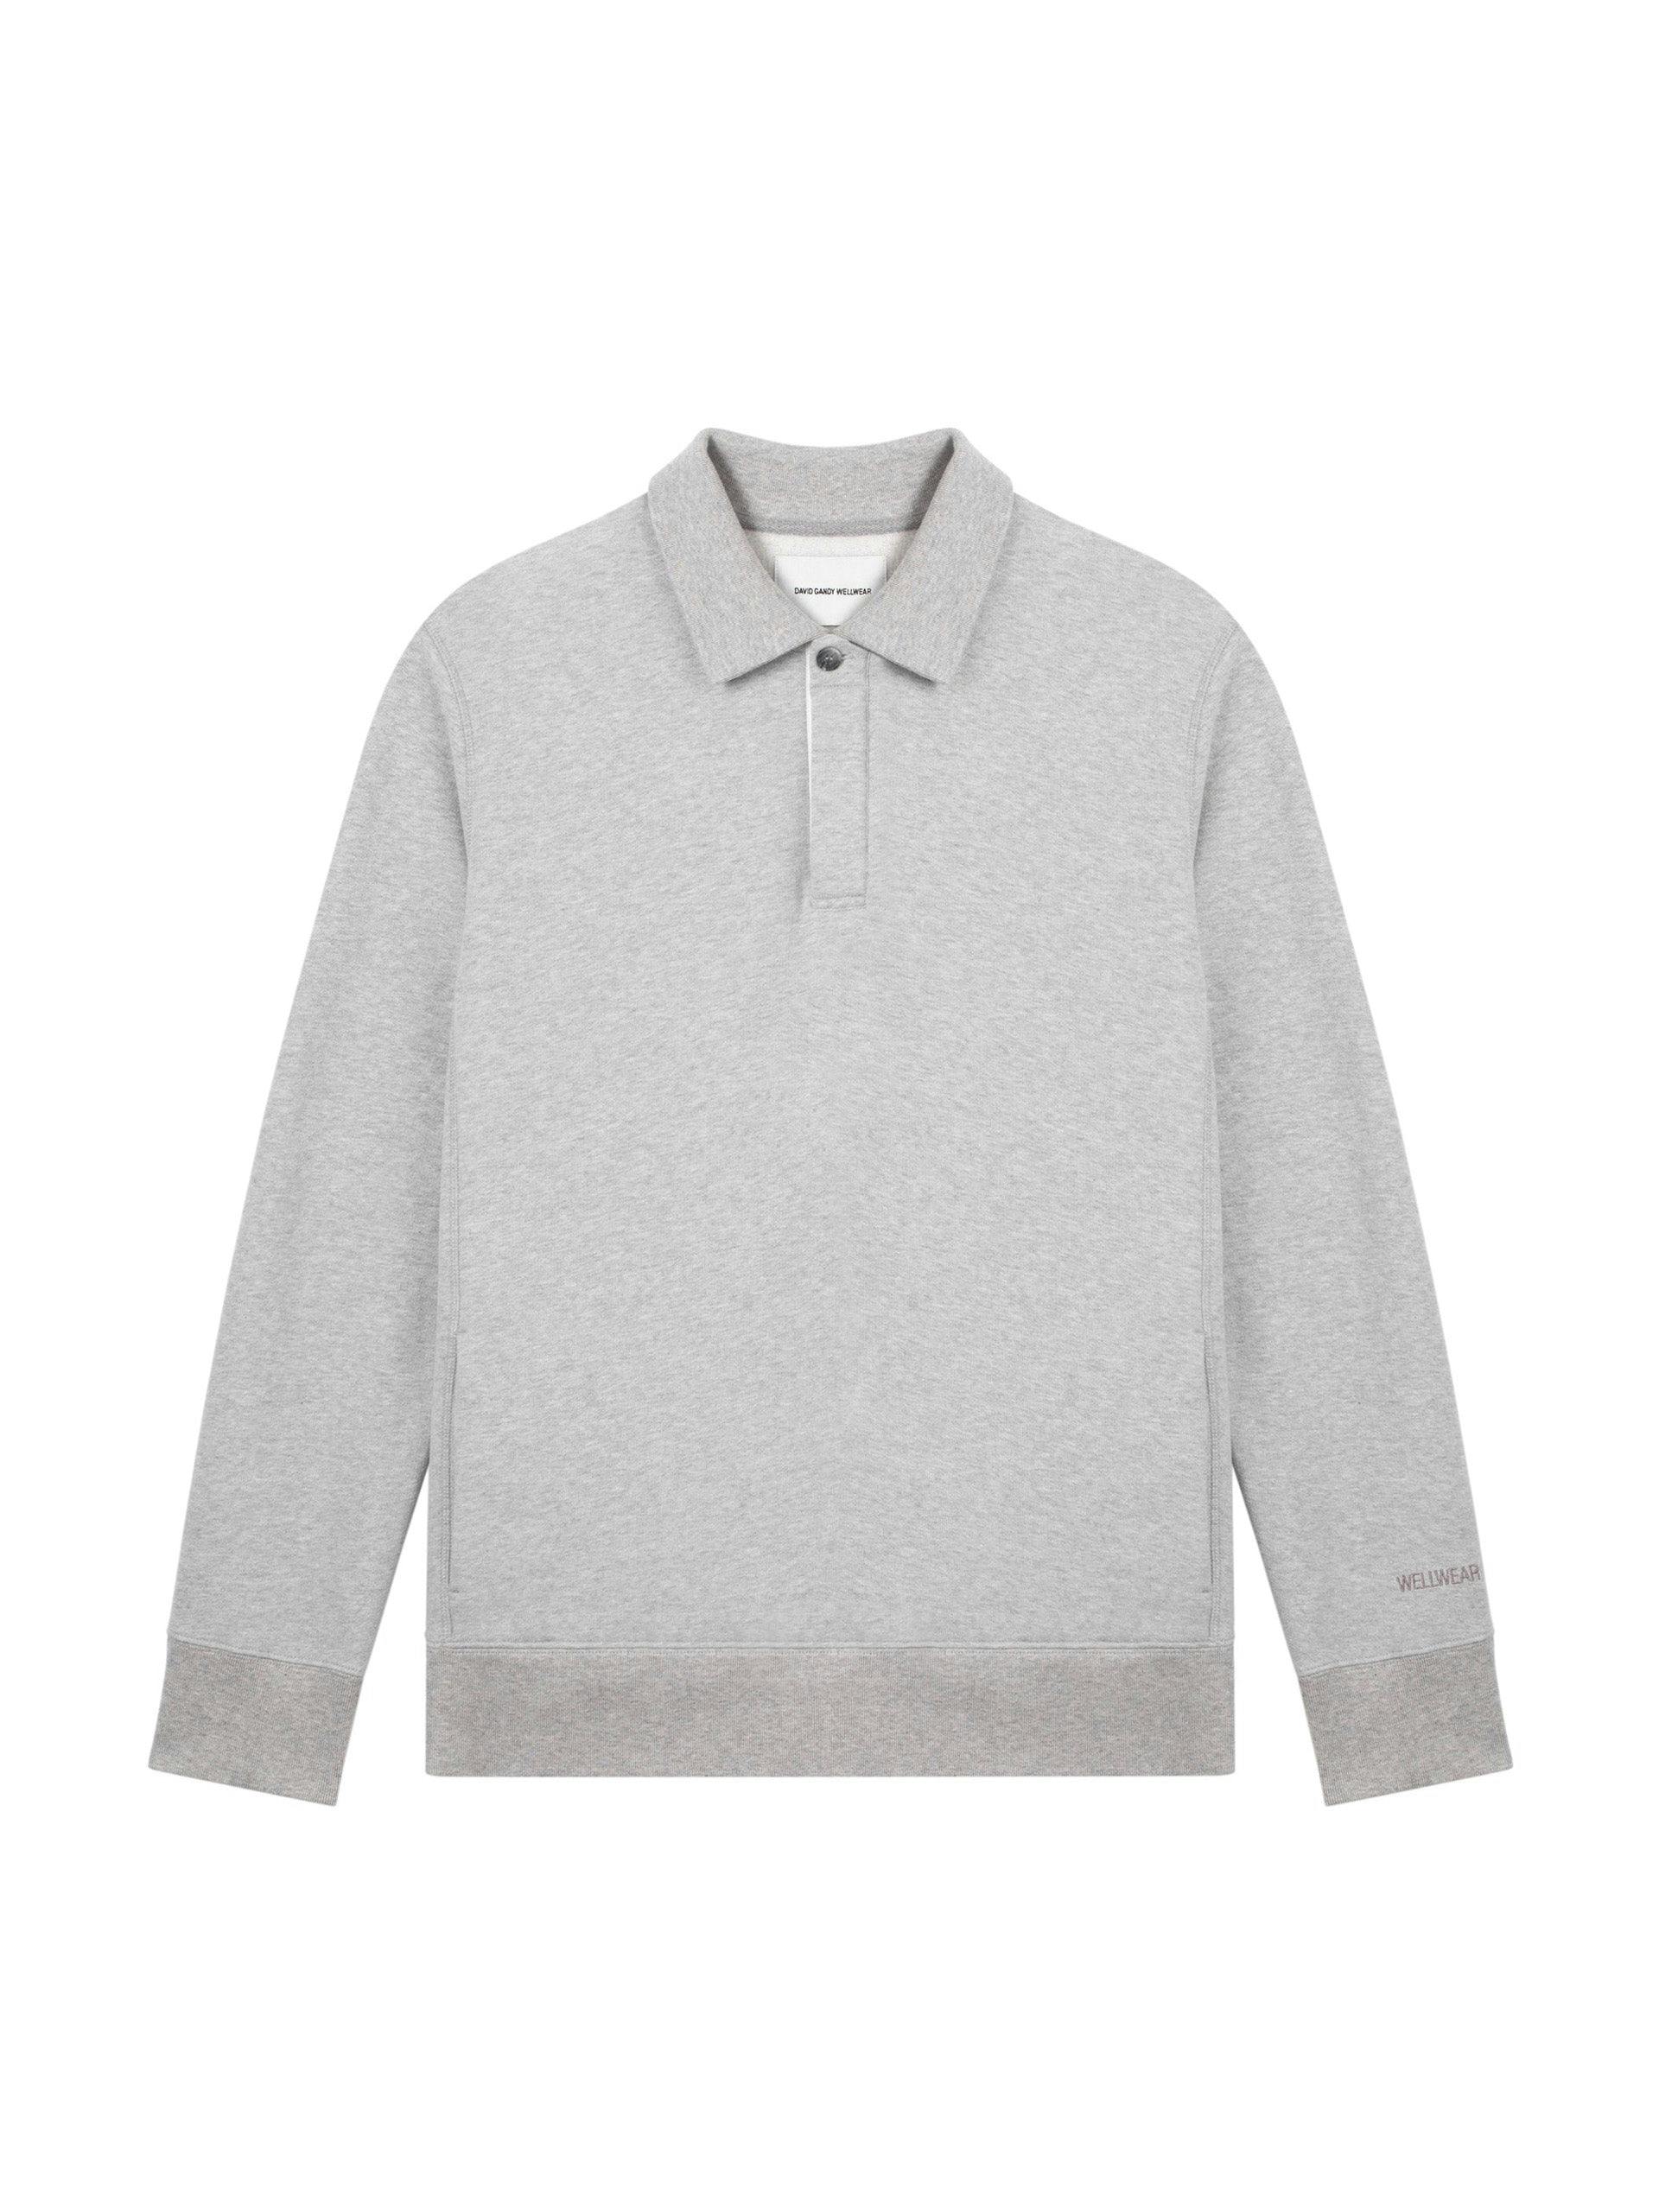 Grey collared sweatshirt